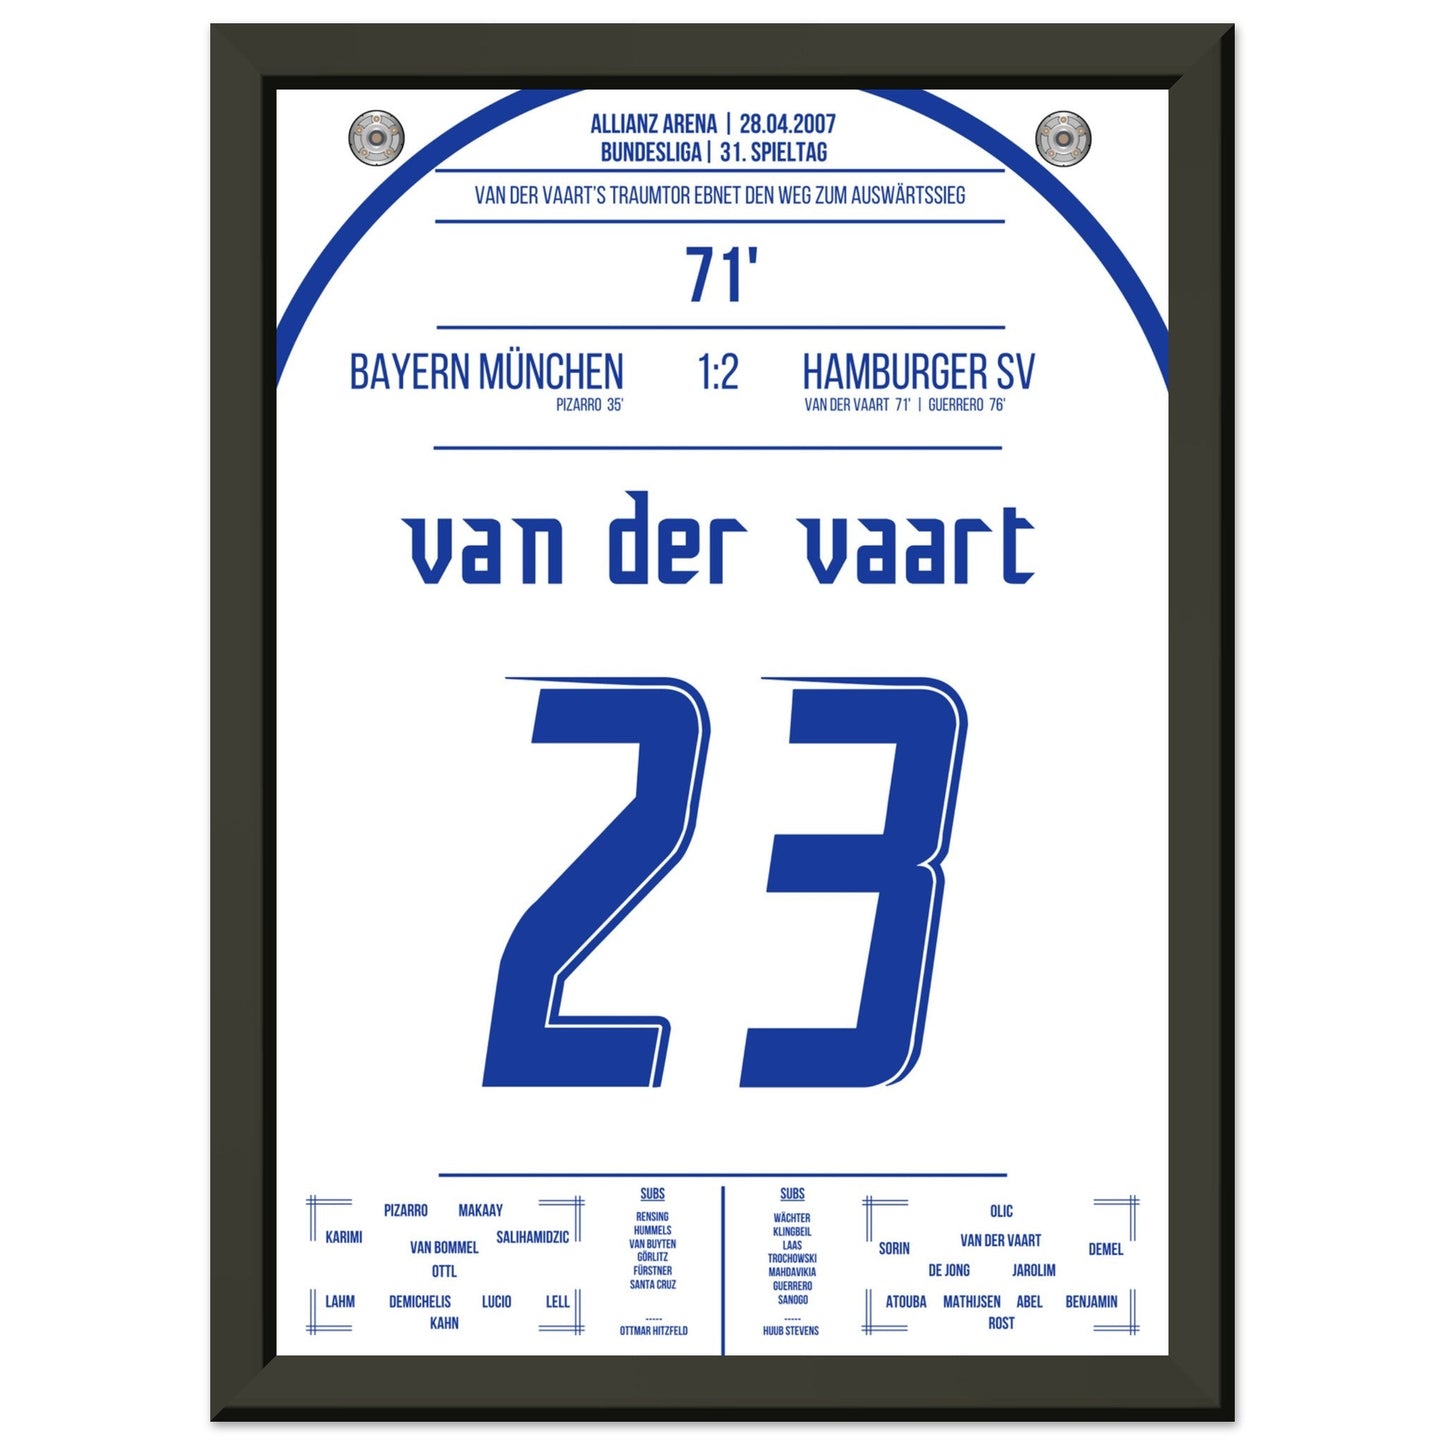 Van der Vaart's Traumtor beim Auswärtsieg bei den Bayern 2007